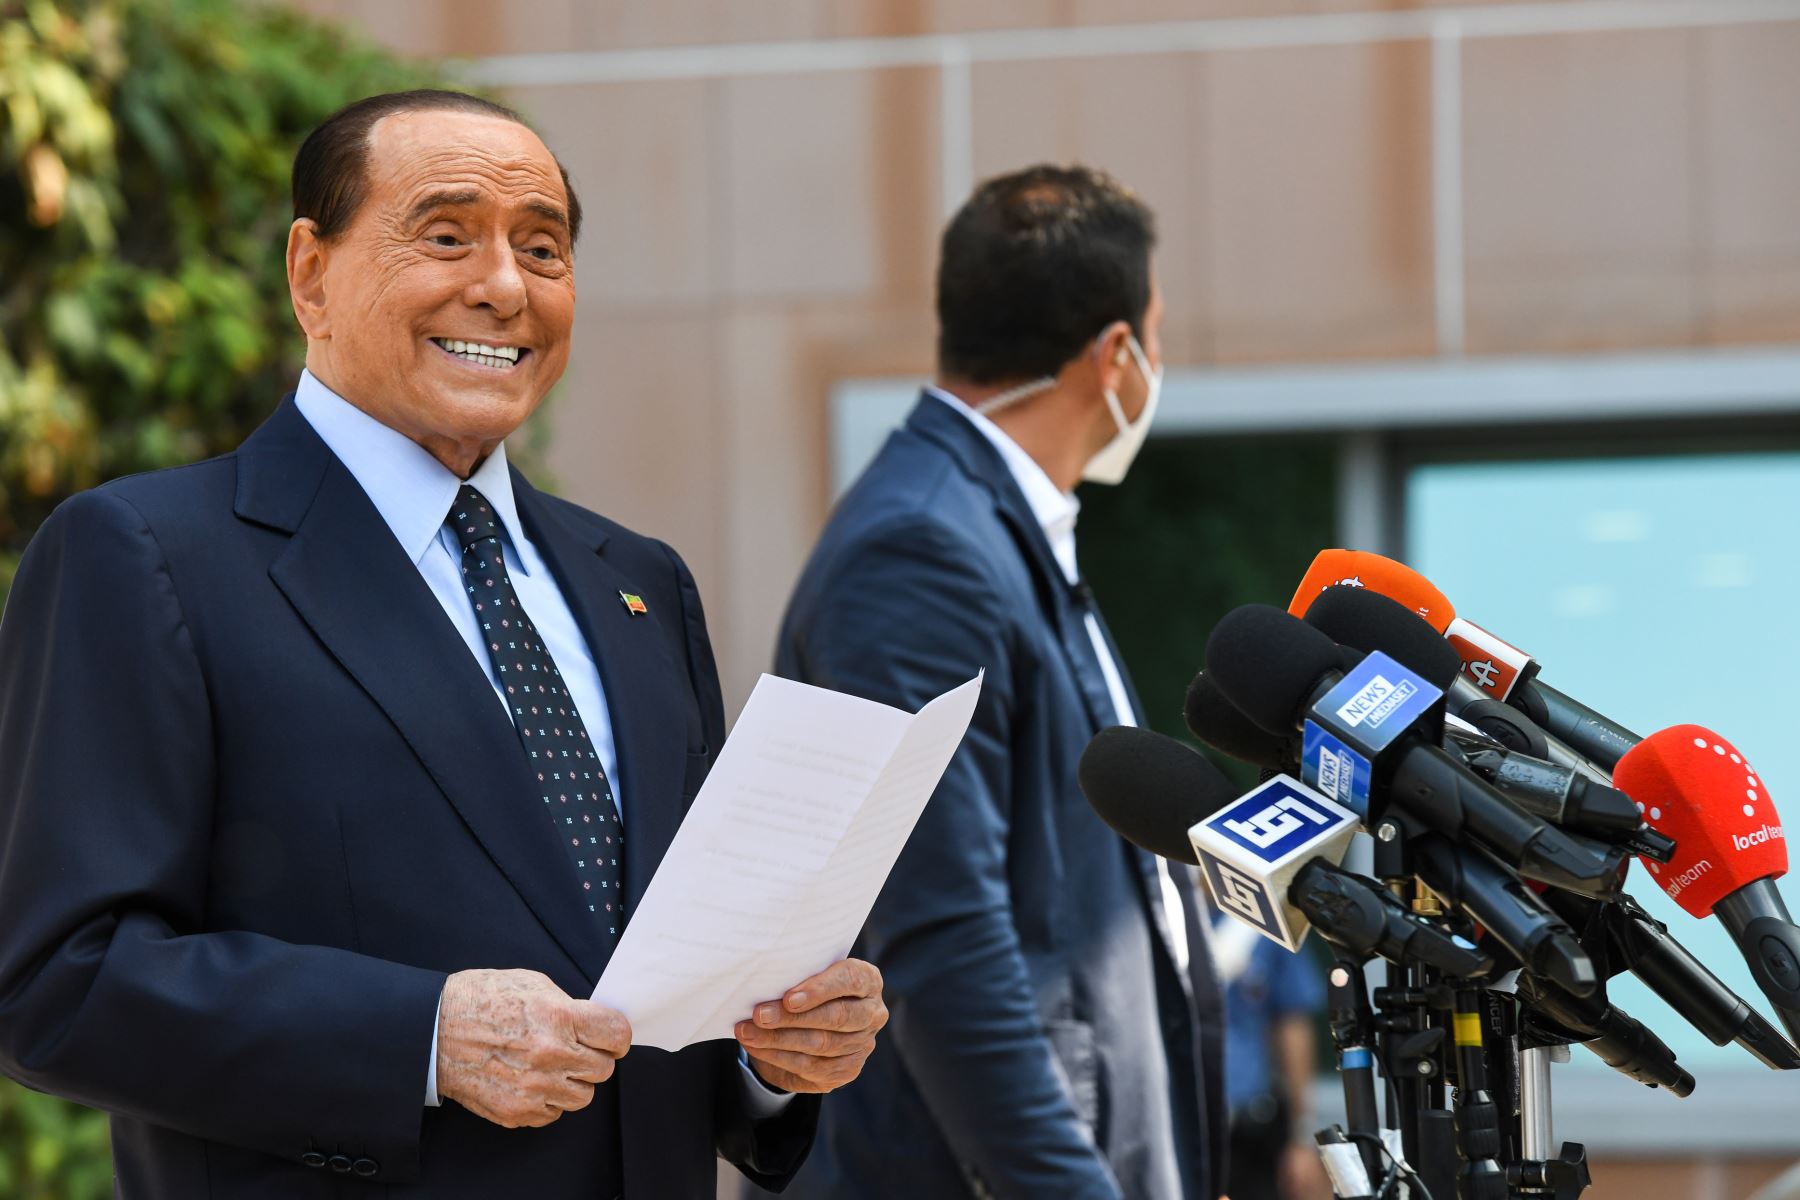 El ex primer ministro italiano Silvio Berlusconi se dirige a los medios de comunicación, al salir del Hospital San Raffaele en Milán el 14 de septiembre de 2020 después de que dio positivo en la prueba de coronavirus y estuvo hospitalizado desde el 3 de septiembre. Foto: AFP